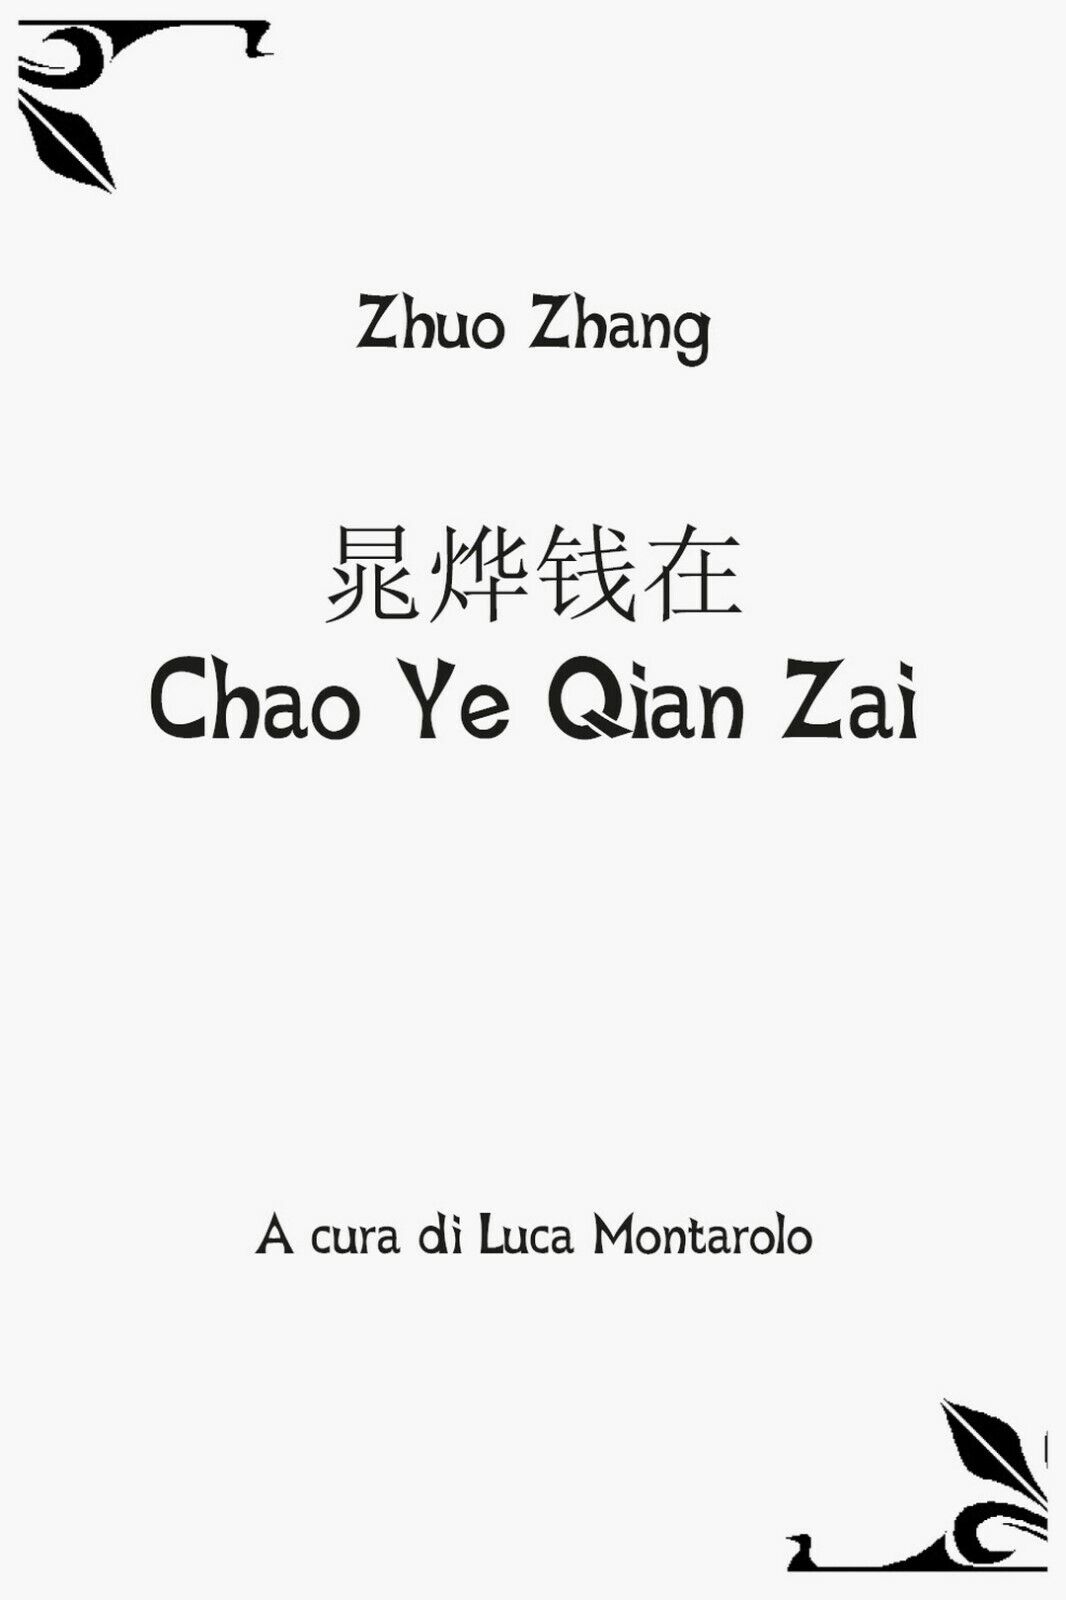 Chao Ye Qian Zai, Zhuo Zhang, L. Montarolo,  2019,  Youcanprint